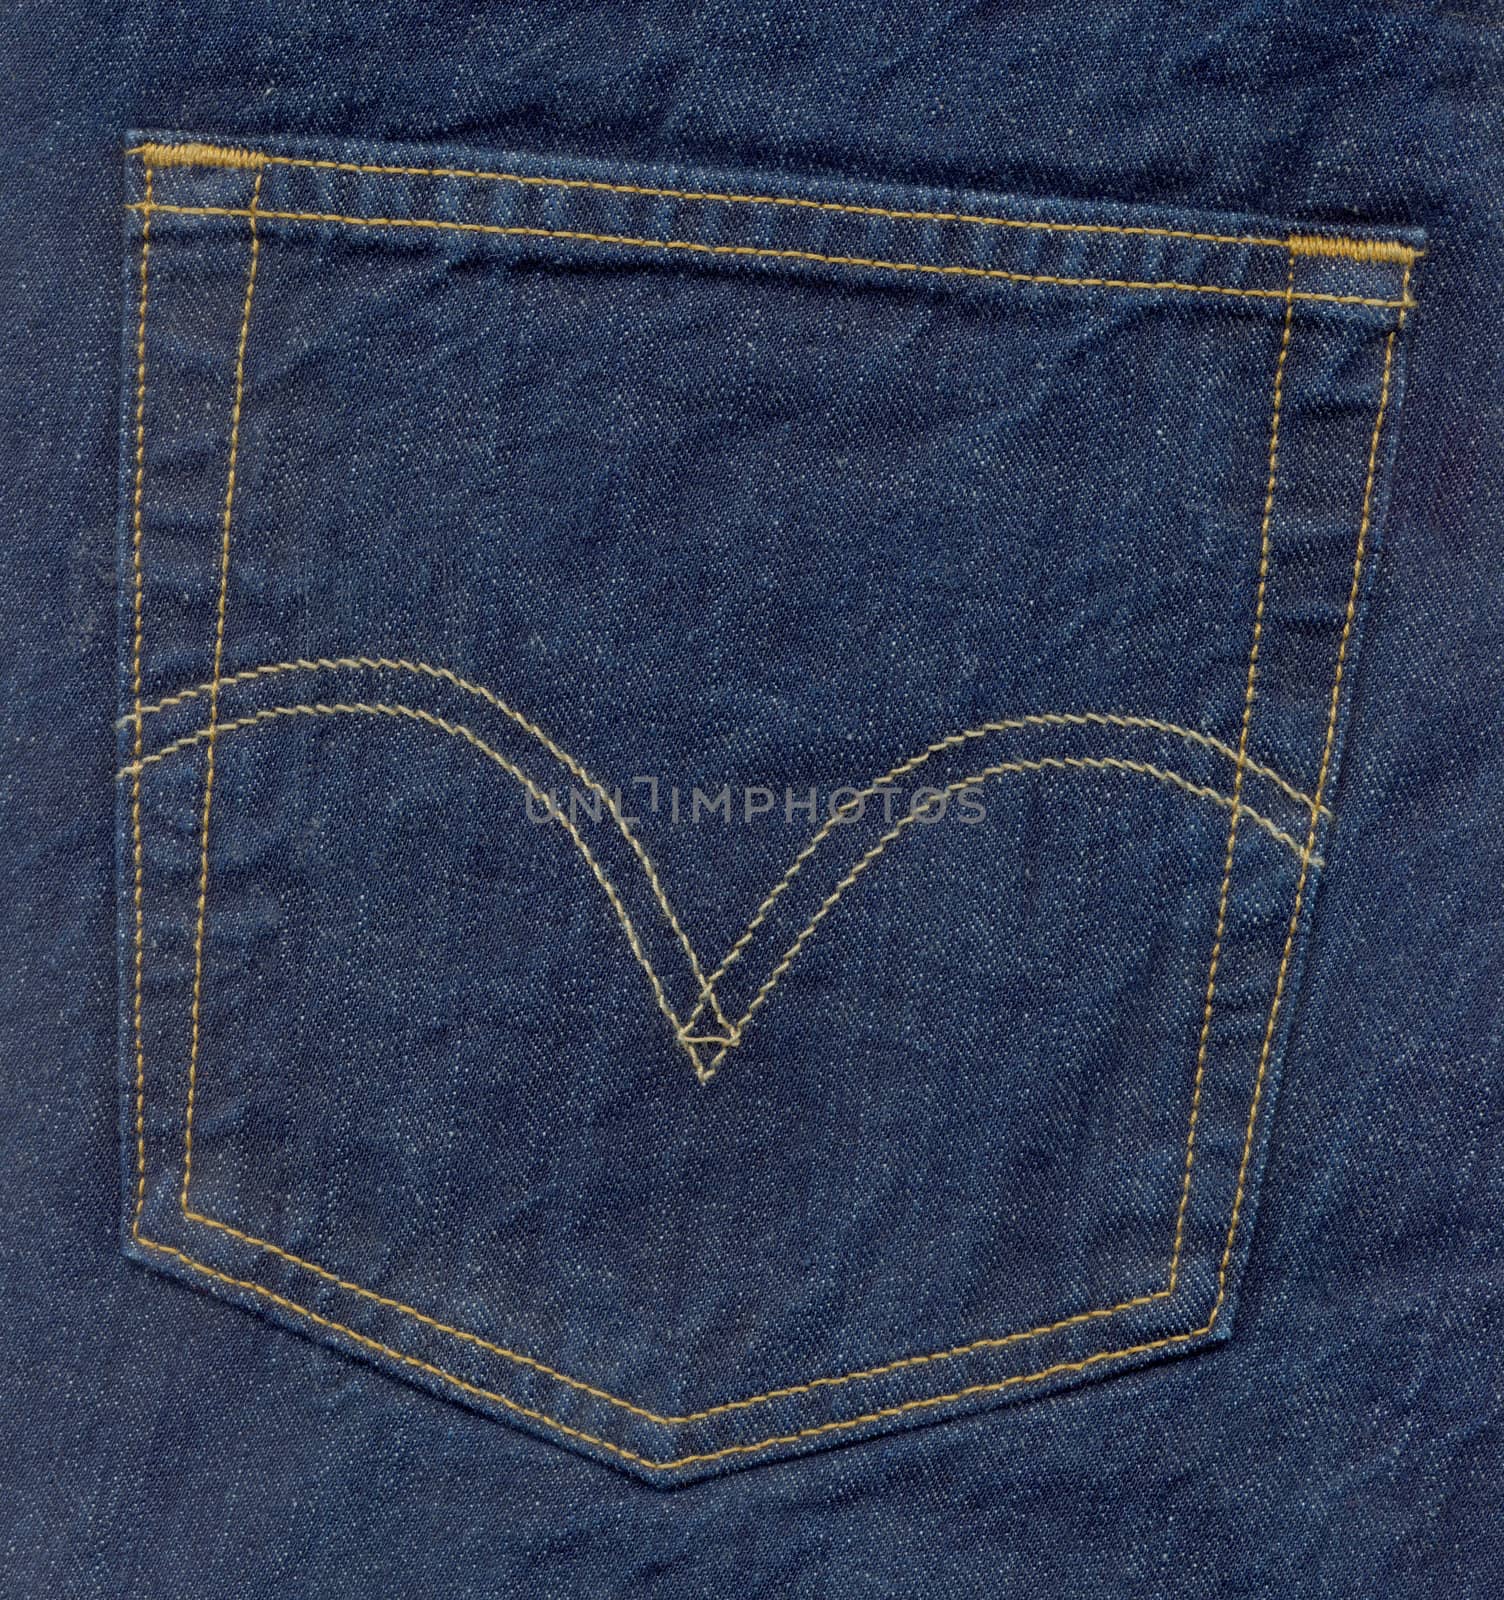 blue jeans pocket by photosoup